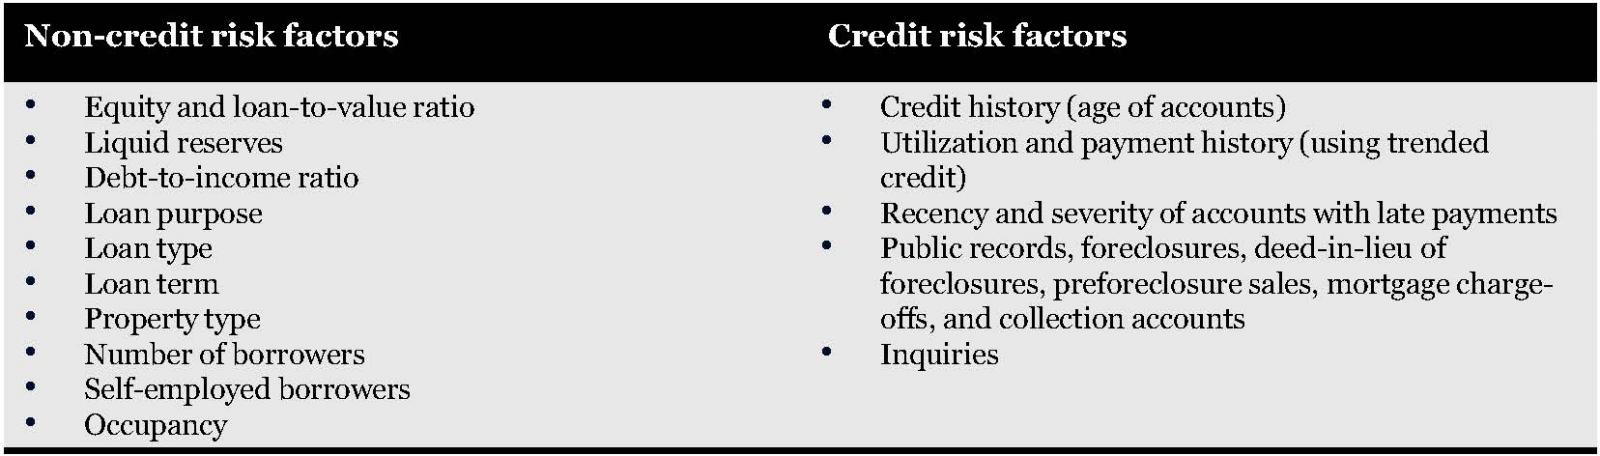 Non-credit risk factors and credit risk factors